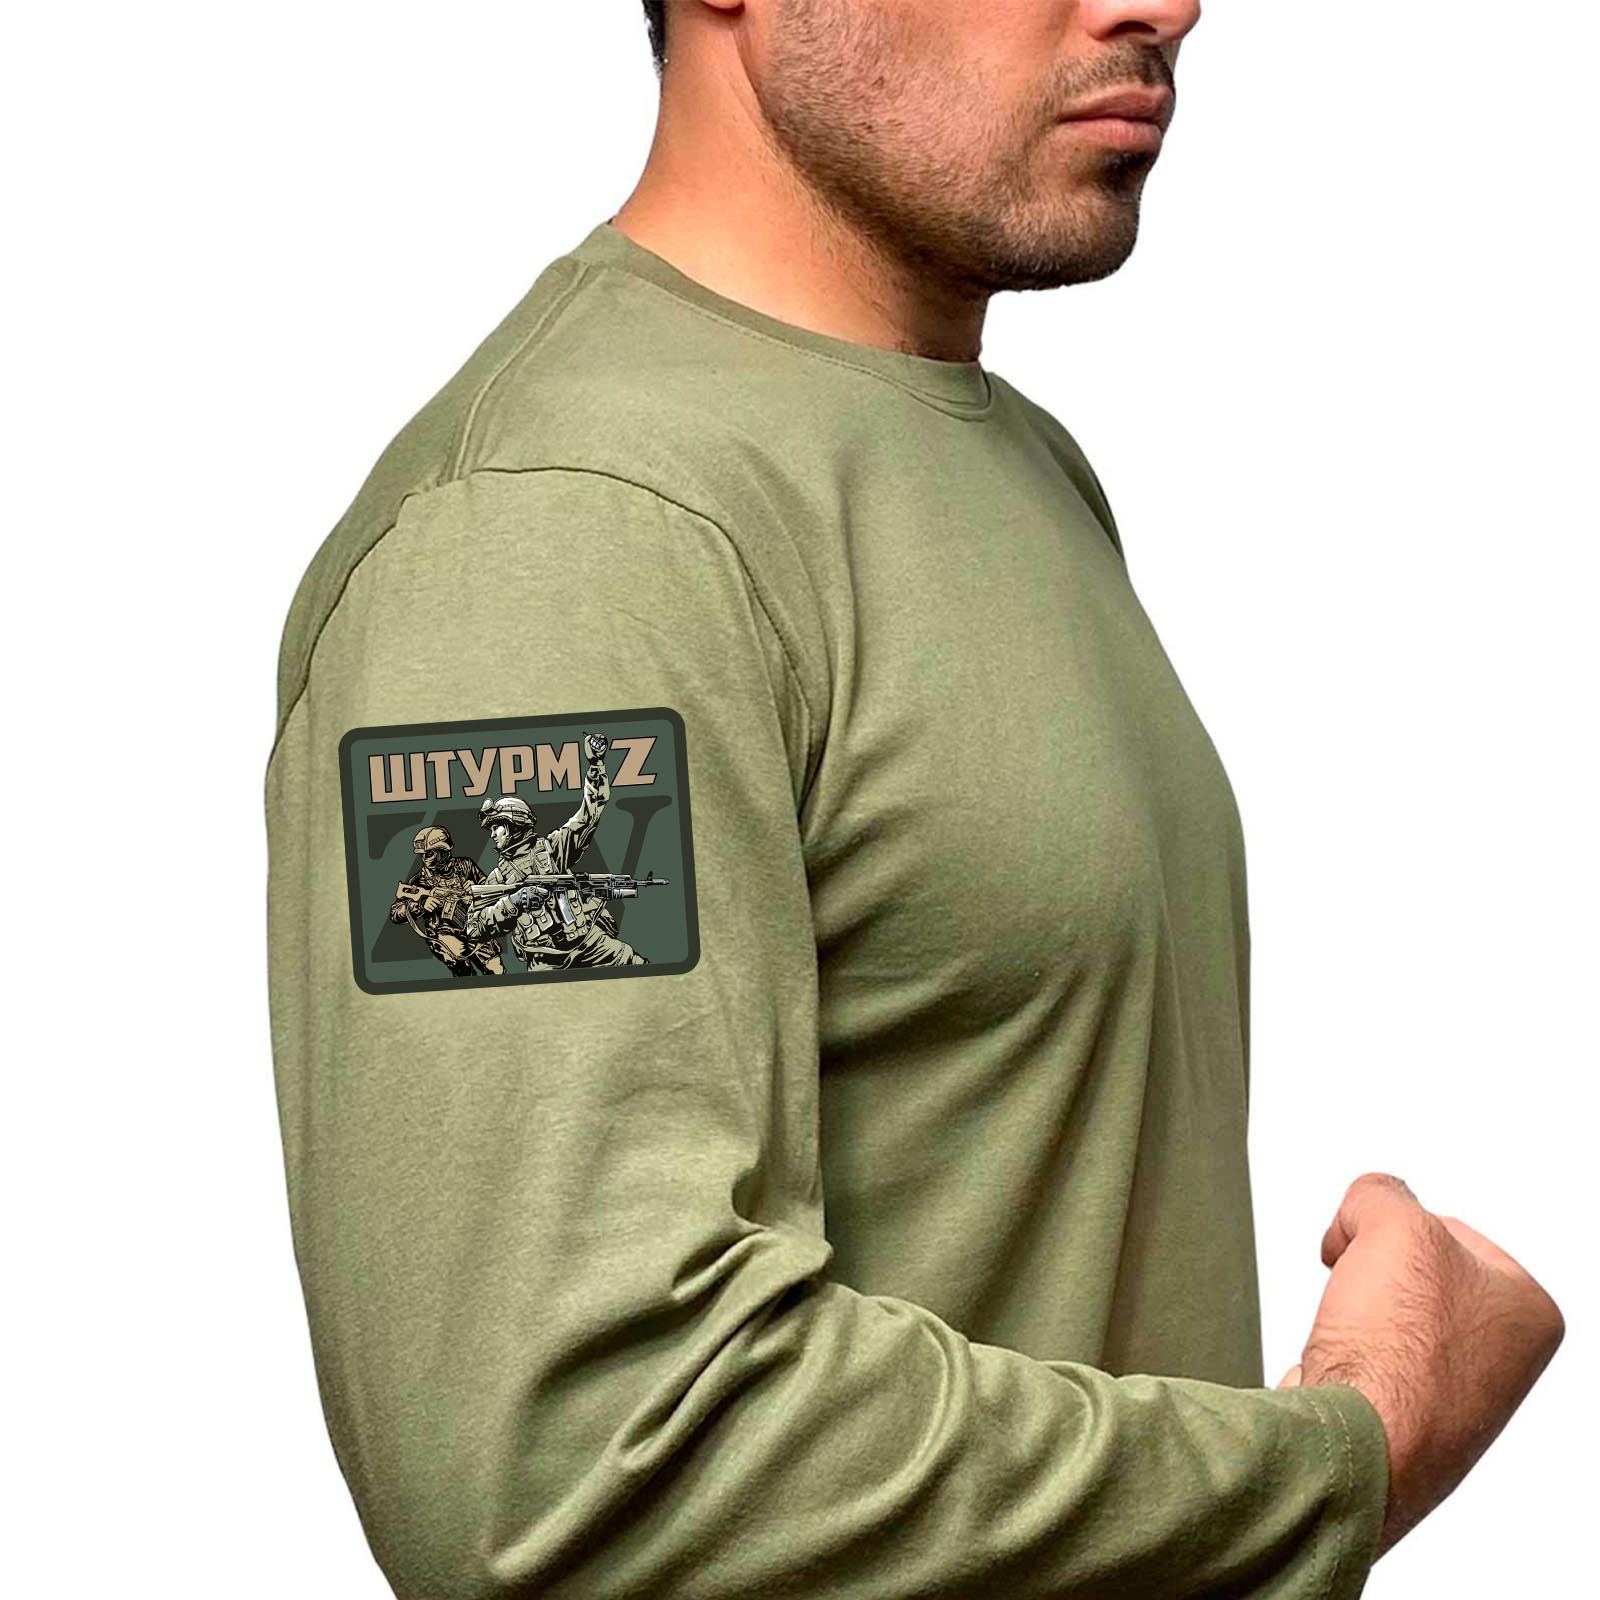 Купить футболку с длинным рукавом хаки-олива с термотрансфером ZV "Штурм"